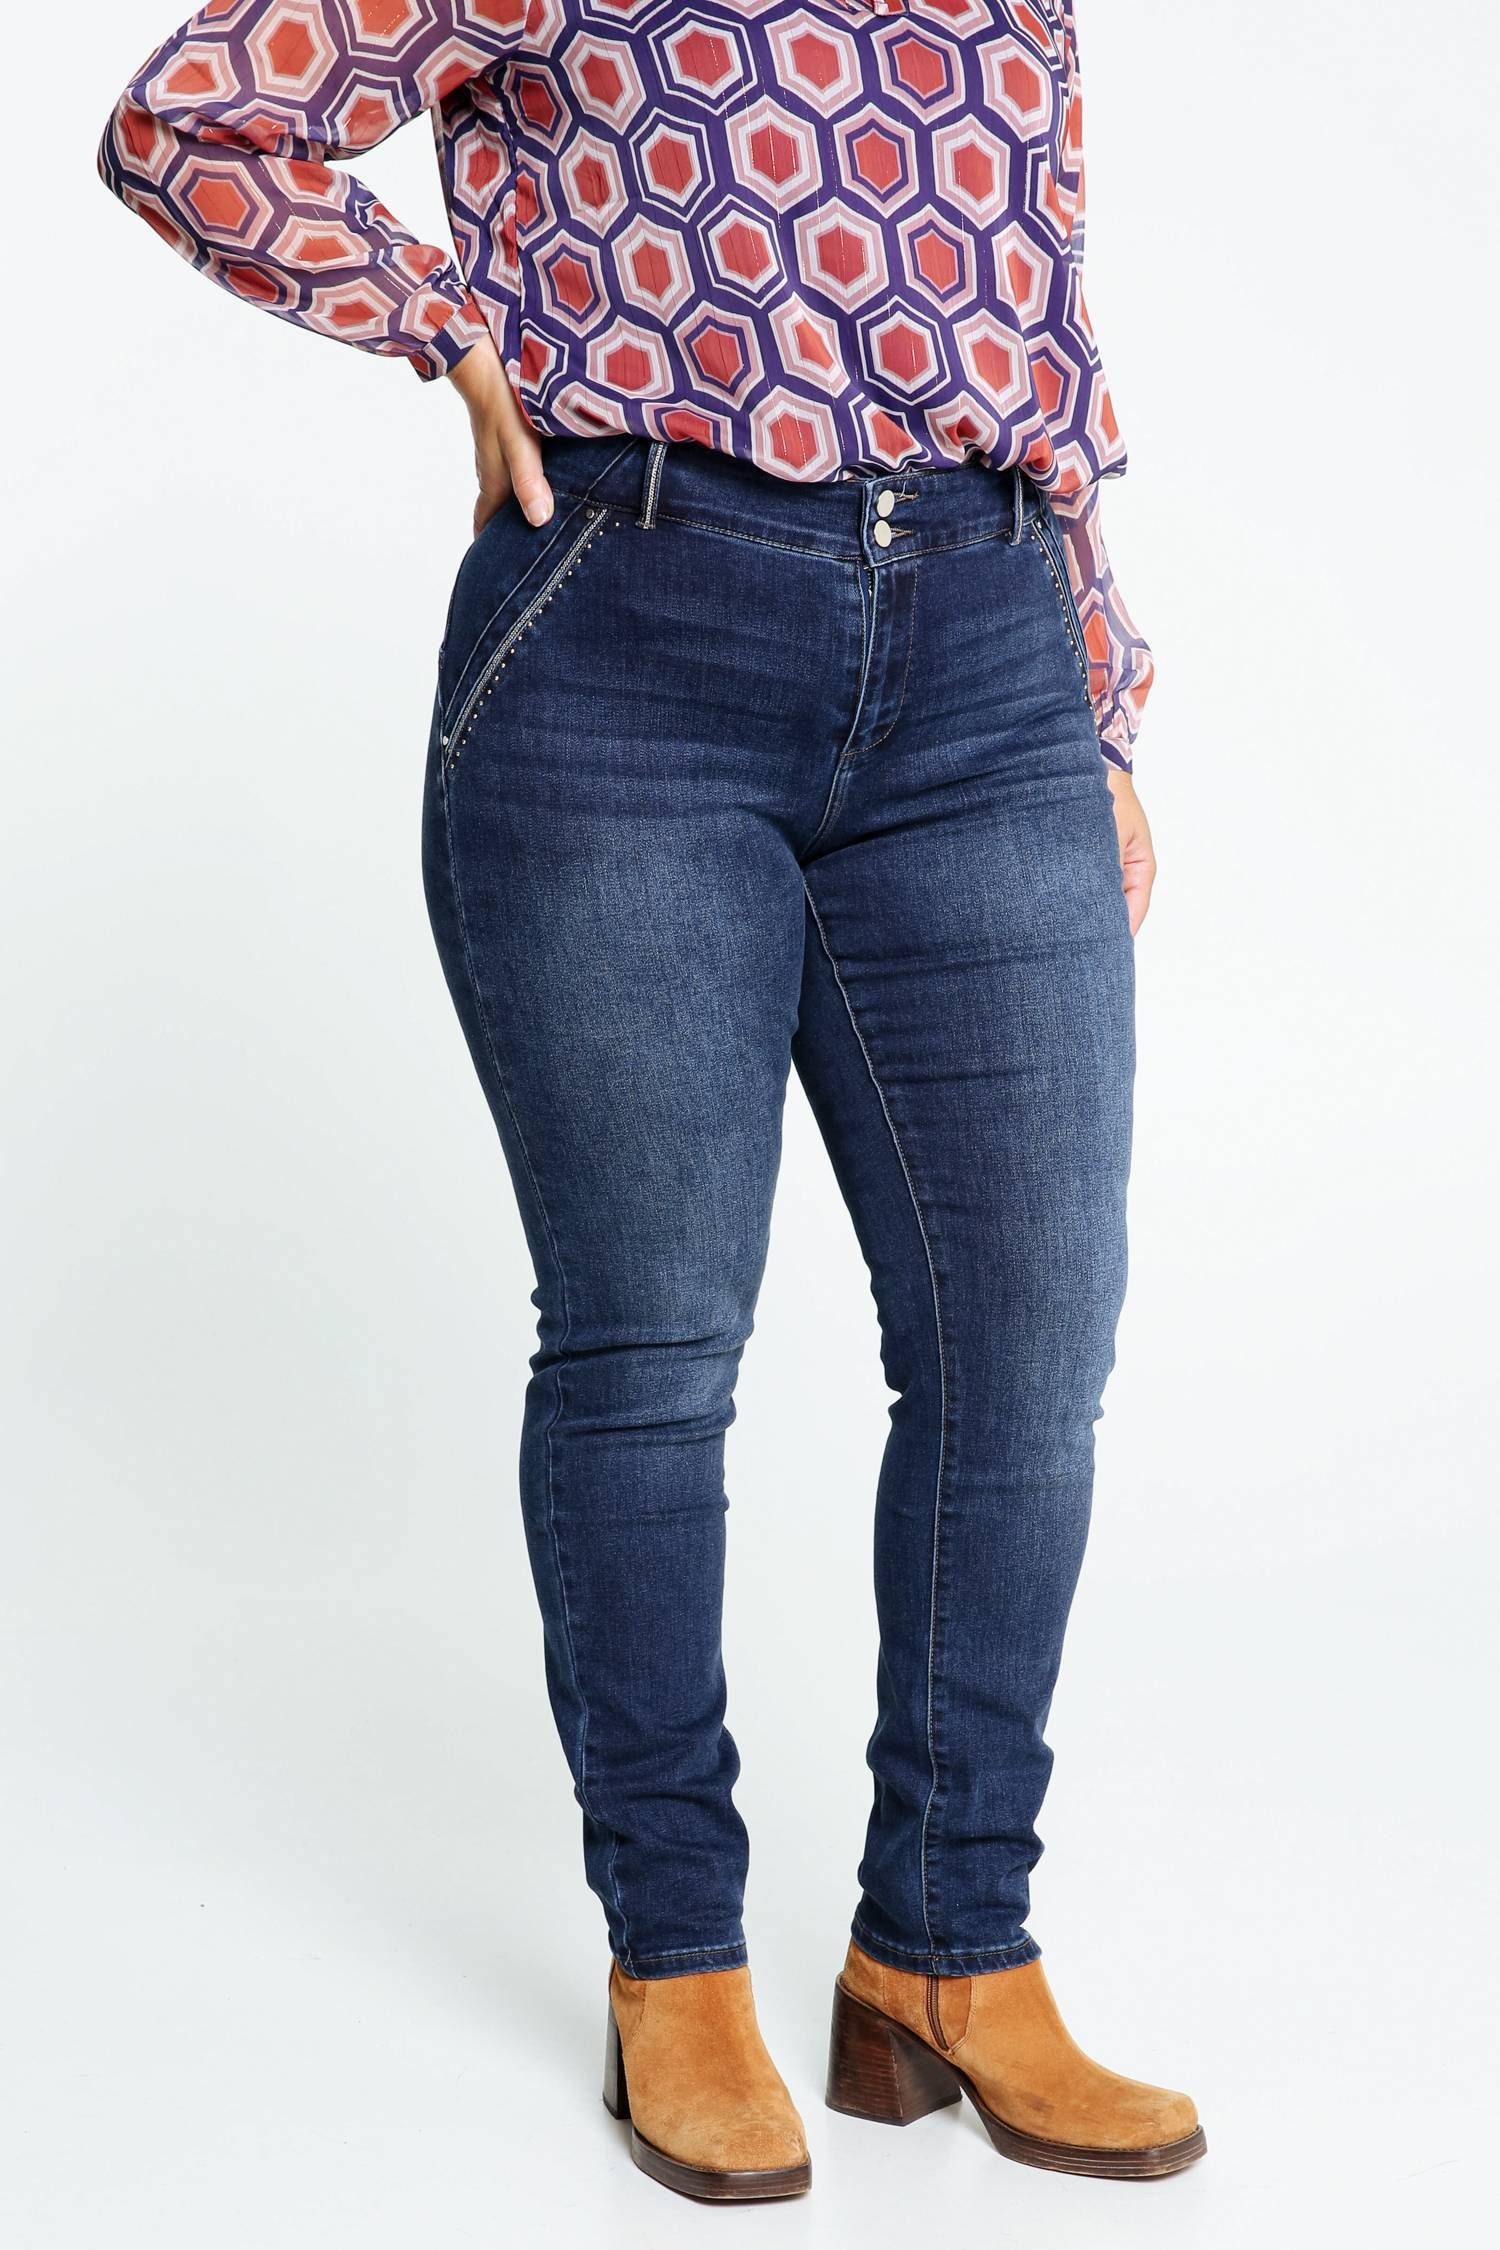 Paprika Slim-Fit-Jeans Louise Mit Push-Up 5-Pocket-Jeans L32